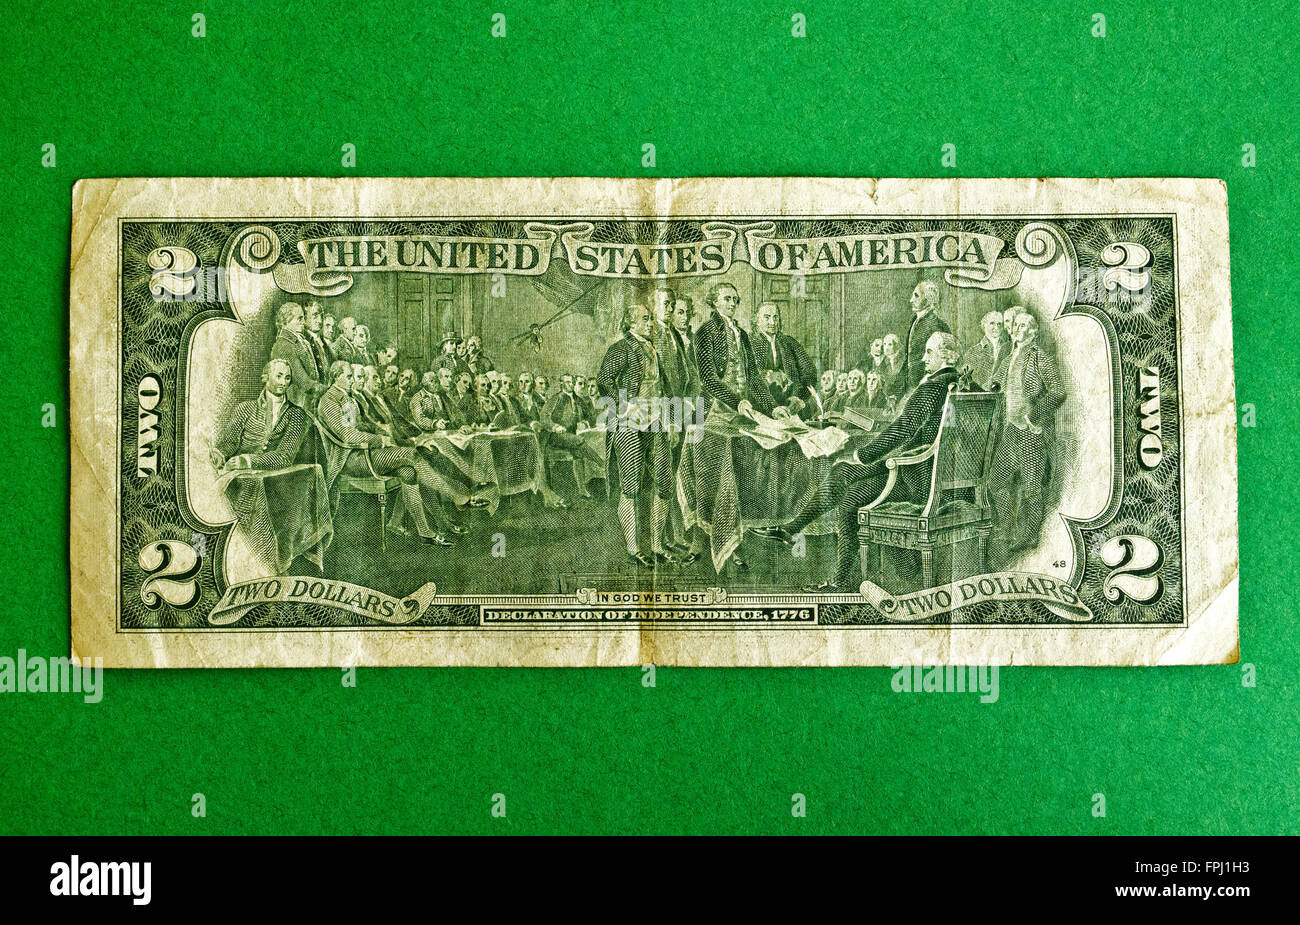 Die Rückseite dieses viel verwendete USA Zwei-Dollar-Note ist eine Gravur von "The Declaration of Independence", ein 1817 Gemälde des amerikanischen Künstlers John Trumbull. Es wurde ein neues Feature von $2 Rechnungen Ausgabe 1976 zu Ehren der Vereinigten Staaten Bicentennial. Die zwei-Dollar-Schein ist eine US-Banknote Bezeichnung nicht im allgemeinen Umlauf und manchmal in der Öffentlichkeit zu aufgegebenen oder sogar falschen gedacht. Erstausgabe im Jahre 1862, wurden $2 Rechnungen angehalten, in den 1960er Jahren wegen ihrer Unbeliebtheit und selten Gebrauch gemacht. Zwei US-Dollar-Geldschein kamen zurück als Federal Reserve Notes im Jahr 1976. Stockfoto